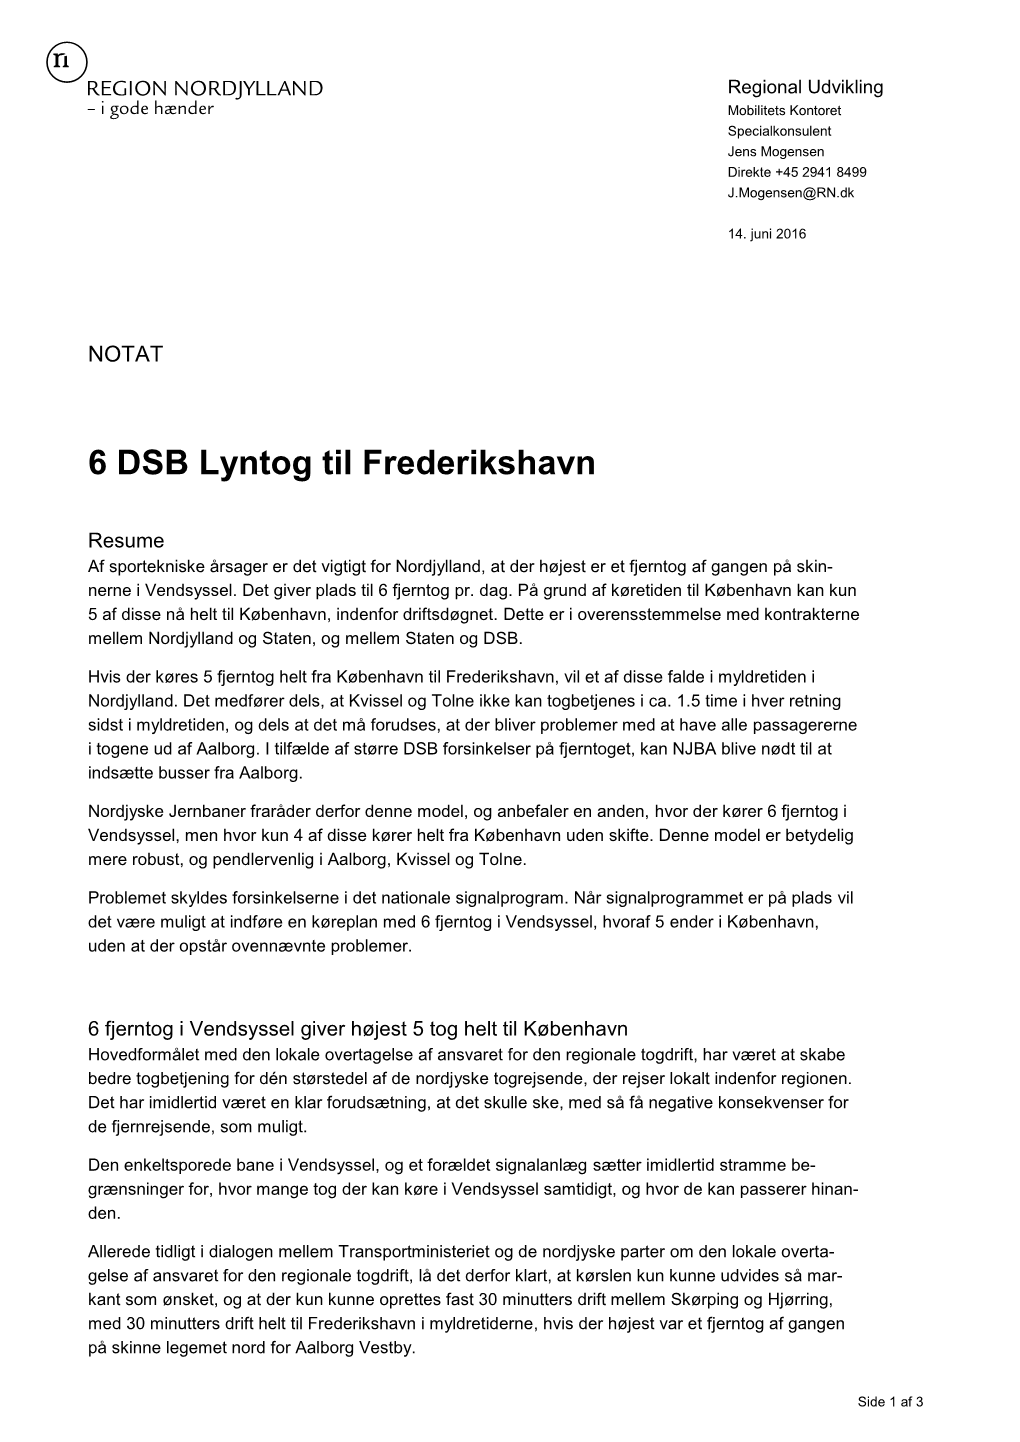 6 DSB Lyntog Til Frederikshavn